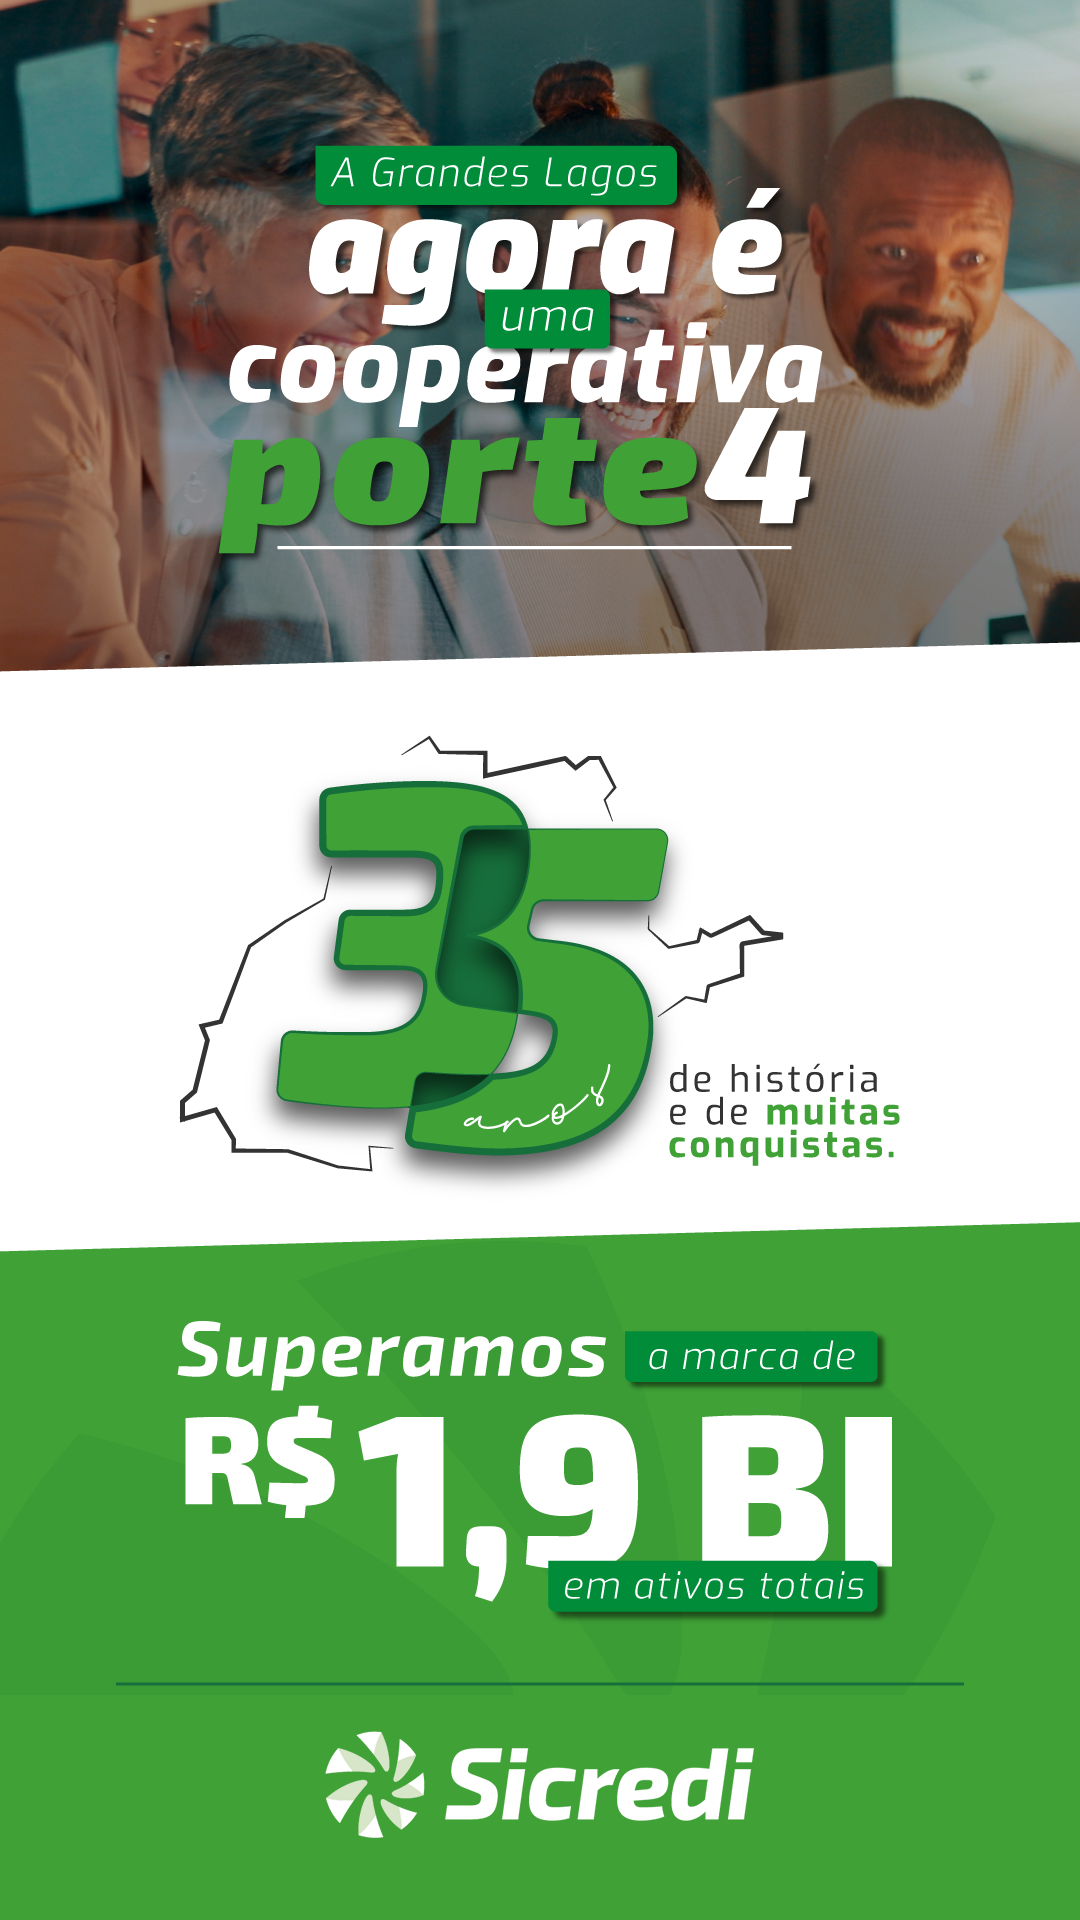 Sicredi Gl Whats Porte 4 01 1080X1920 Alt 3 Certo - Jornal Expoente Do Iguaçu